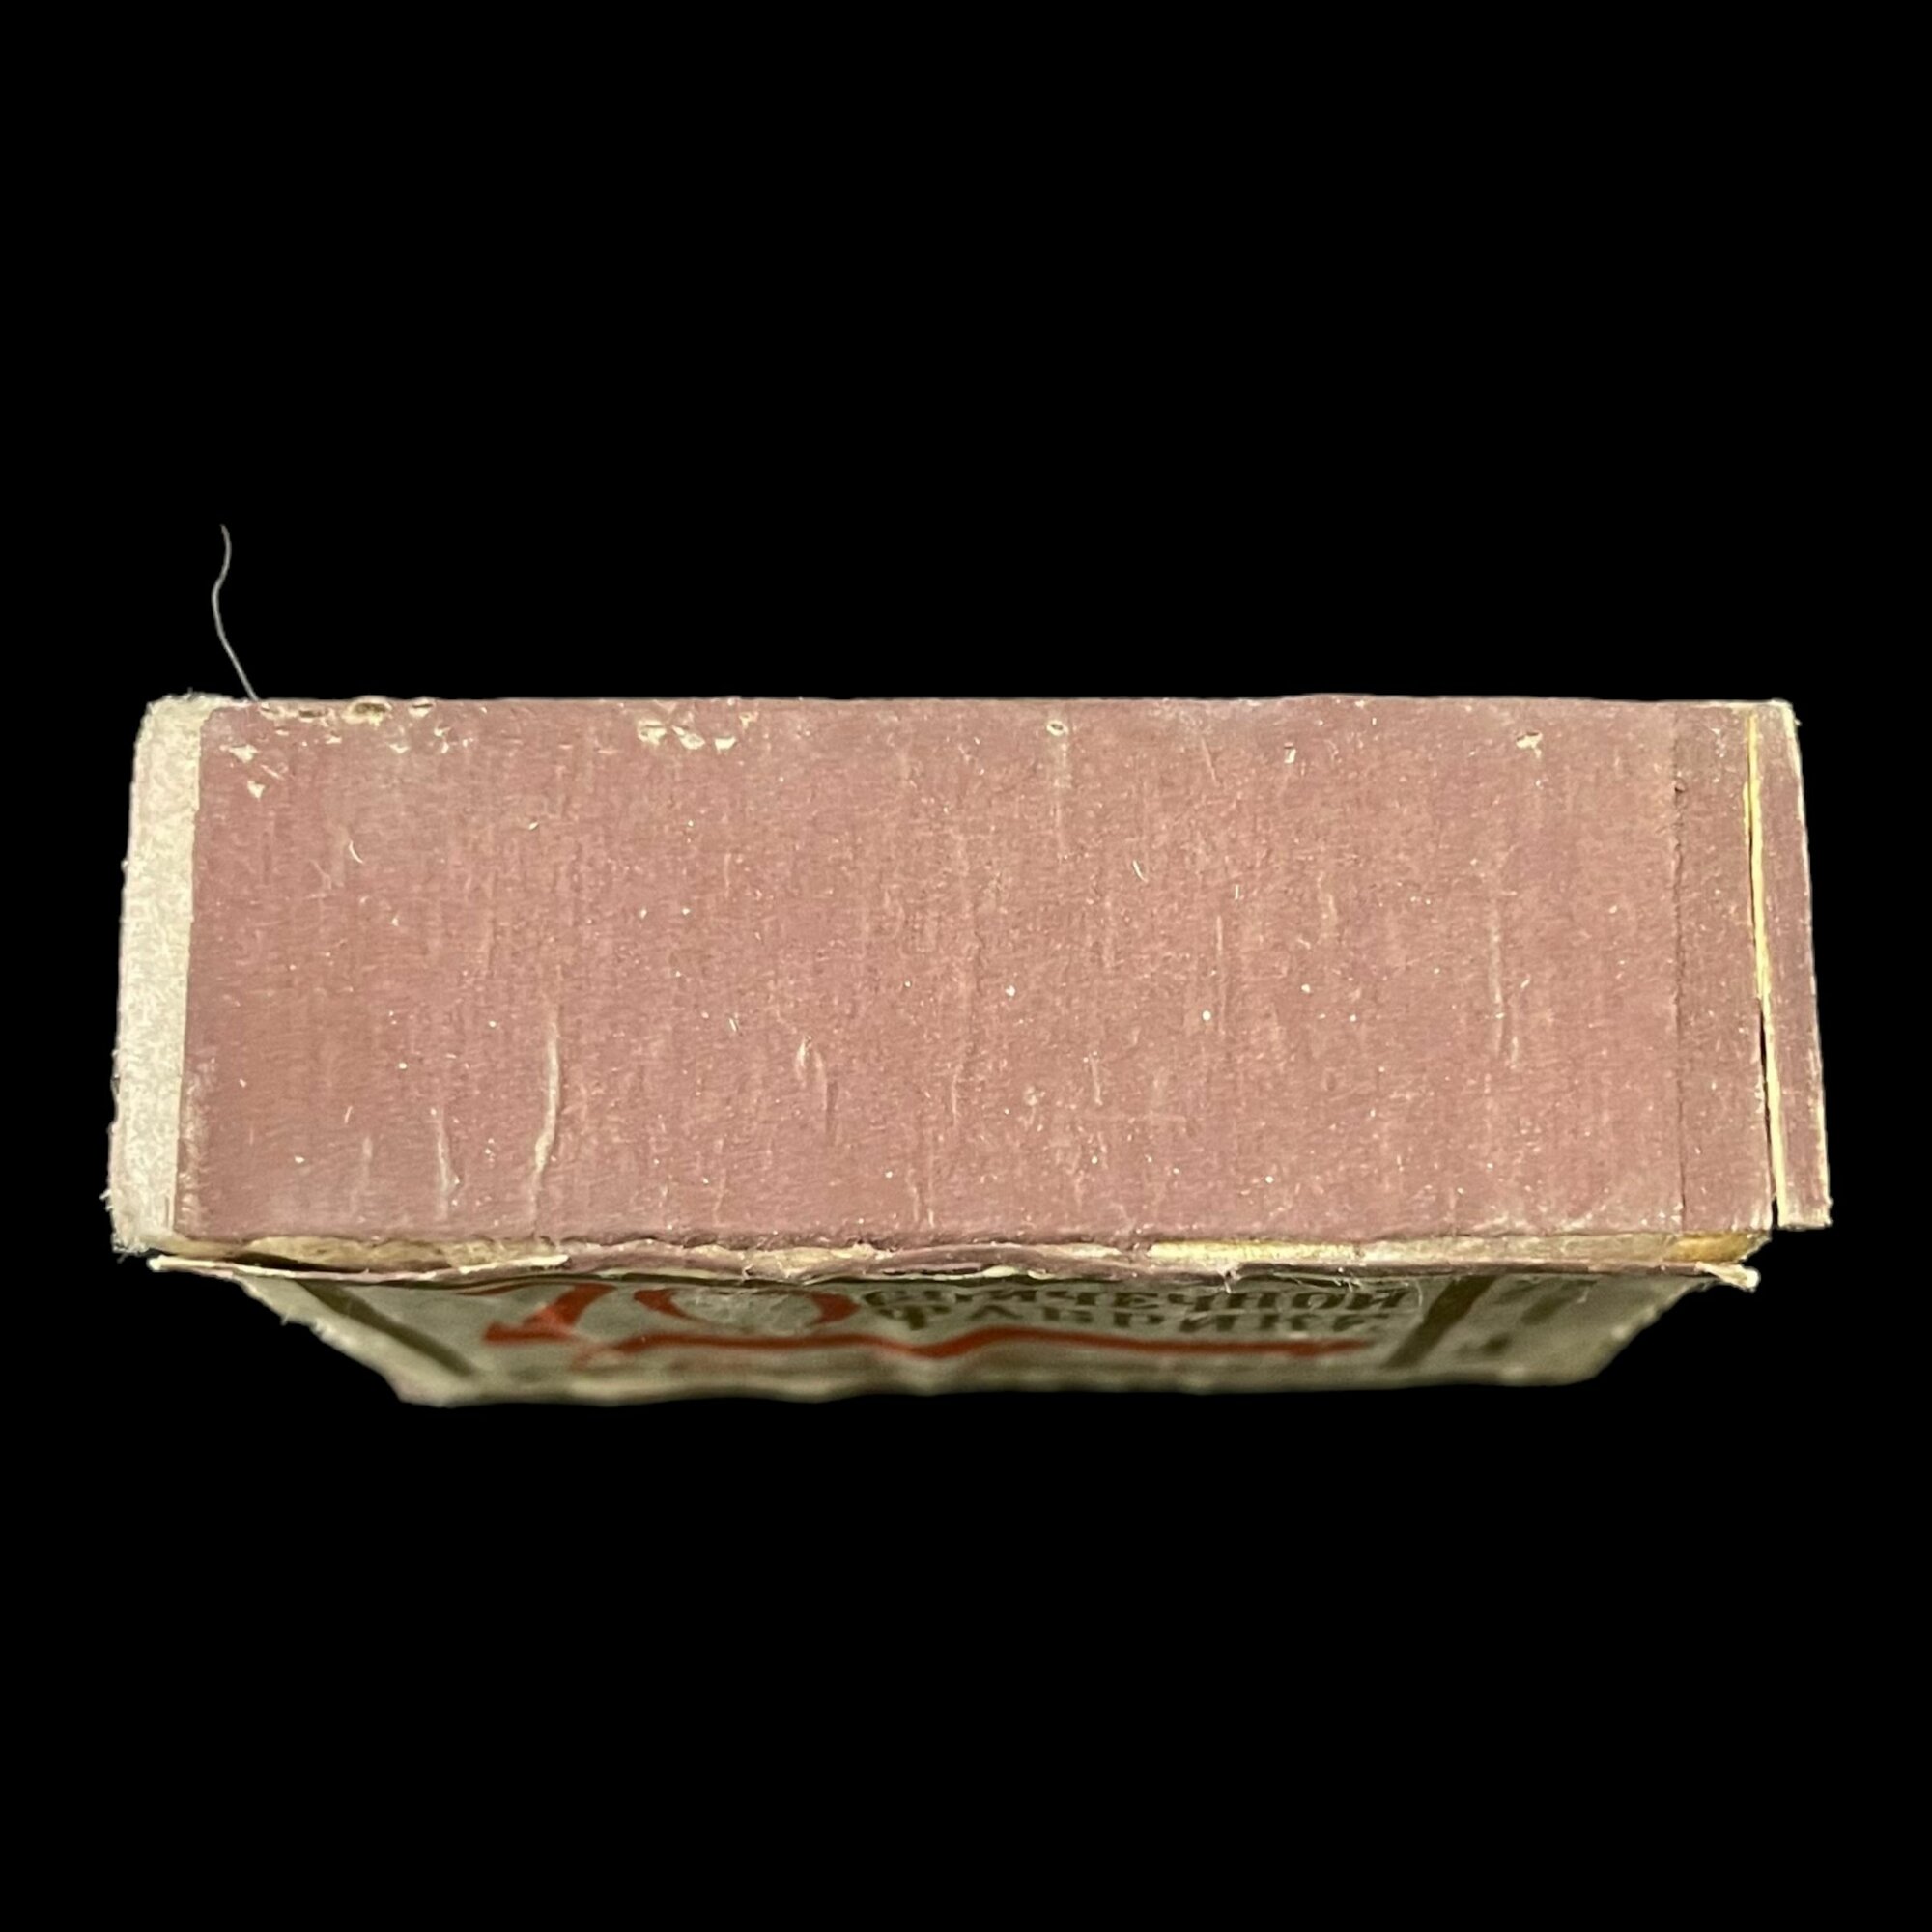 Советский спичечный коробок. 70 лет спичечной фабрике Белка. Сделано в СССР